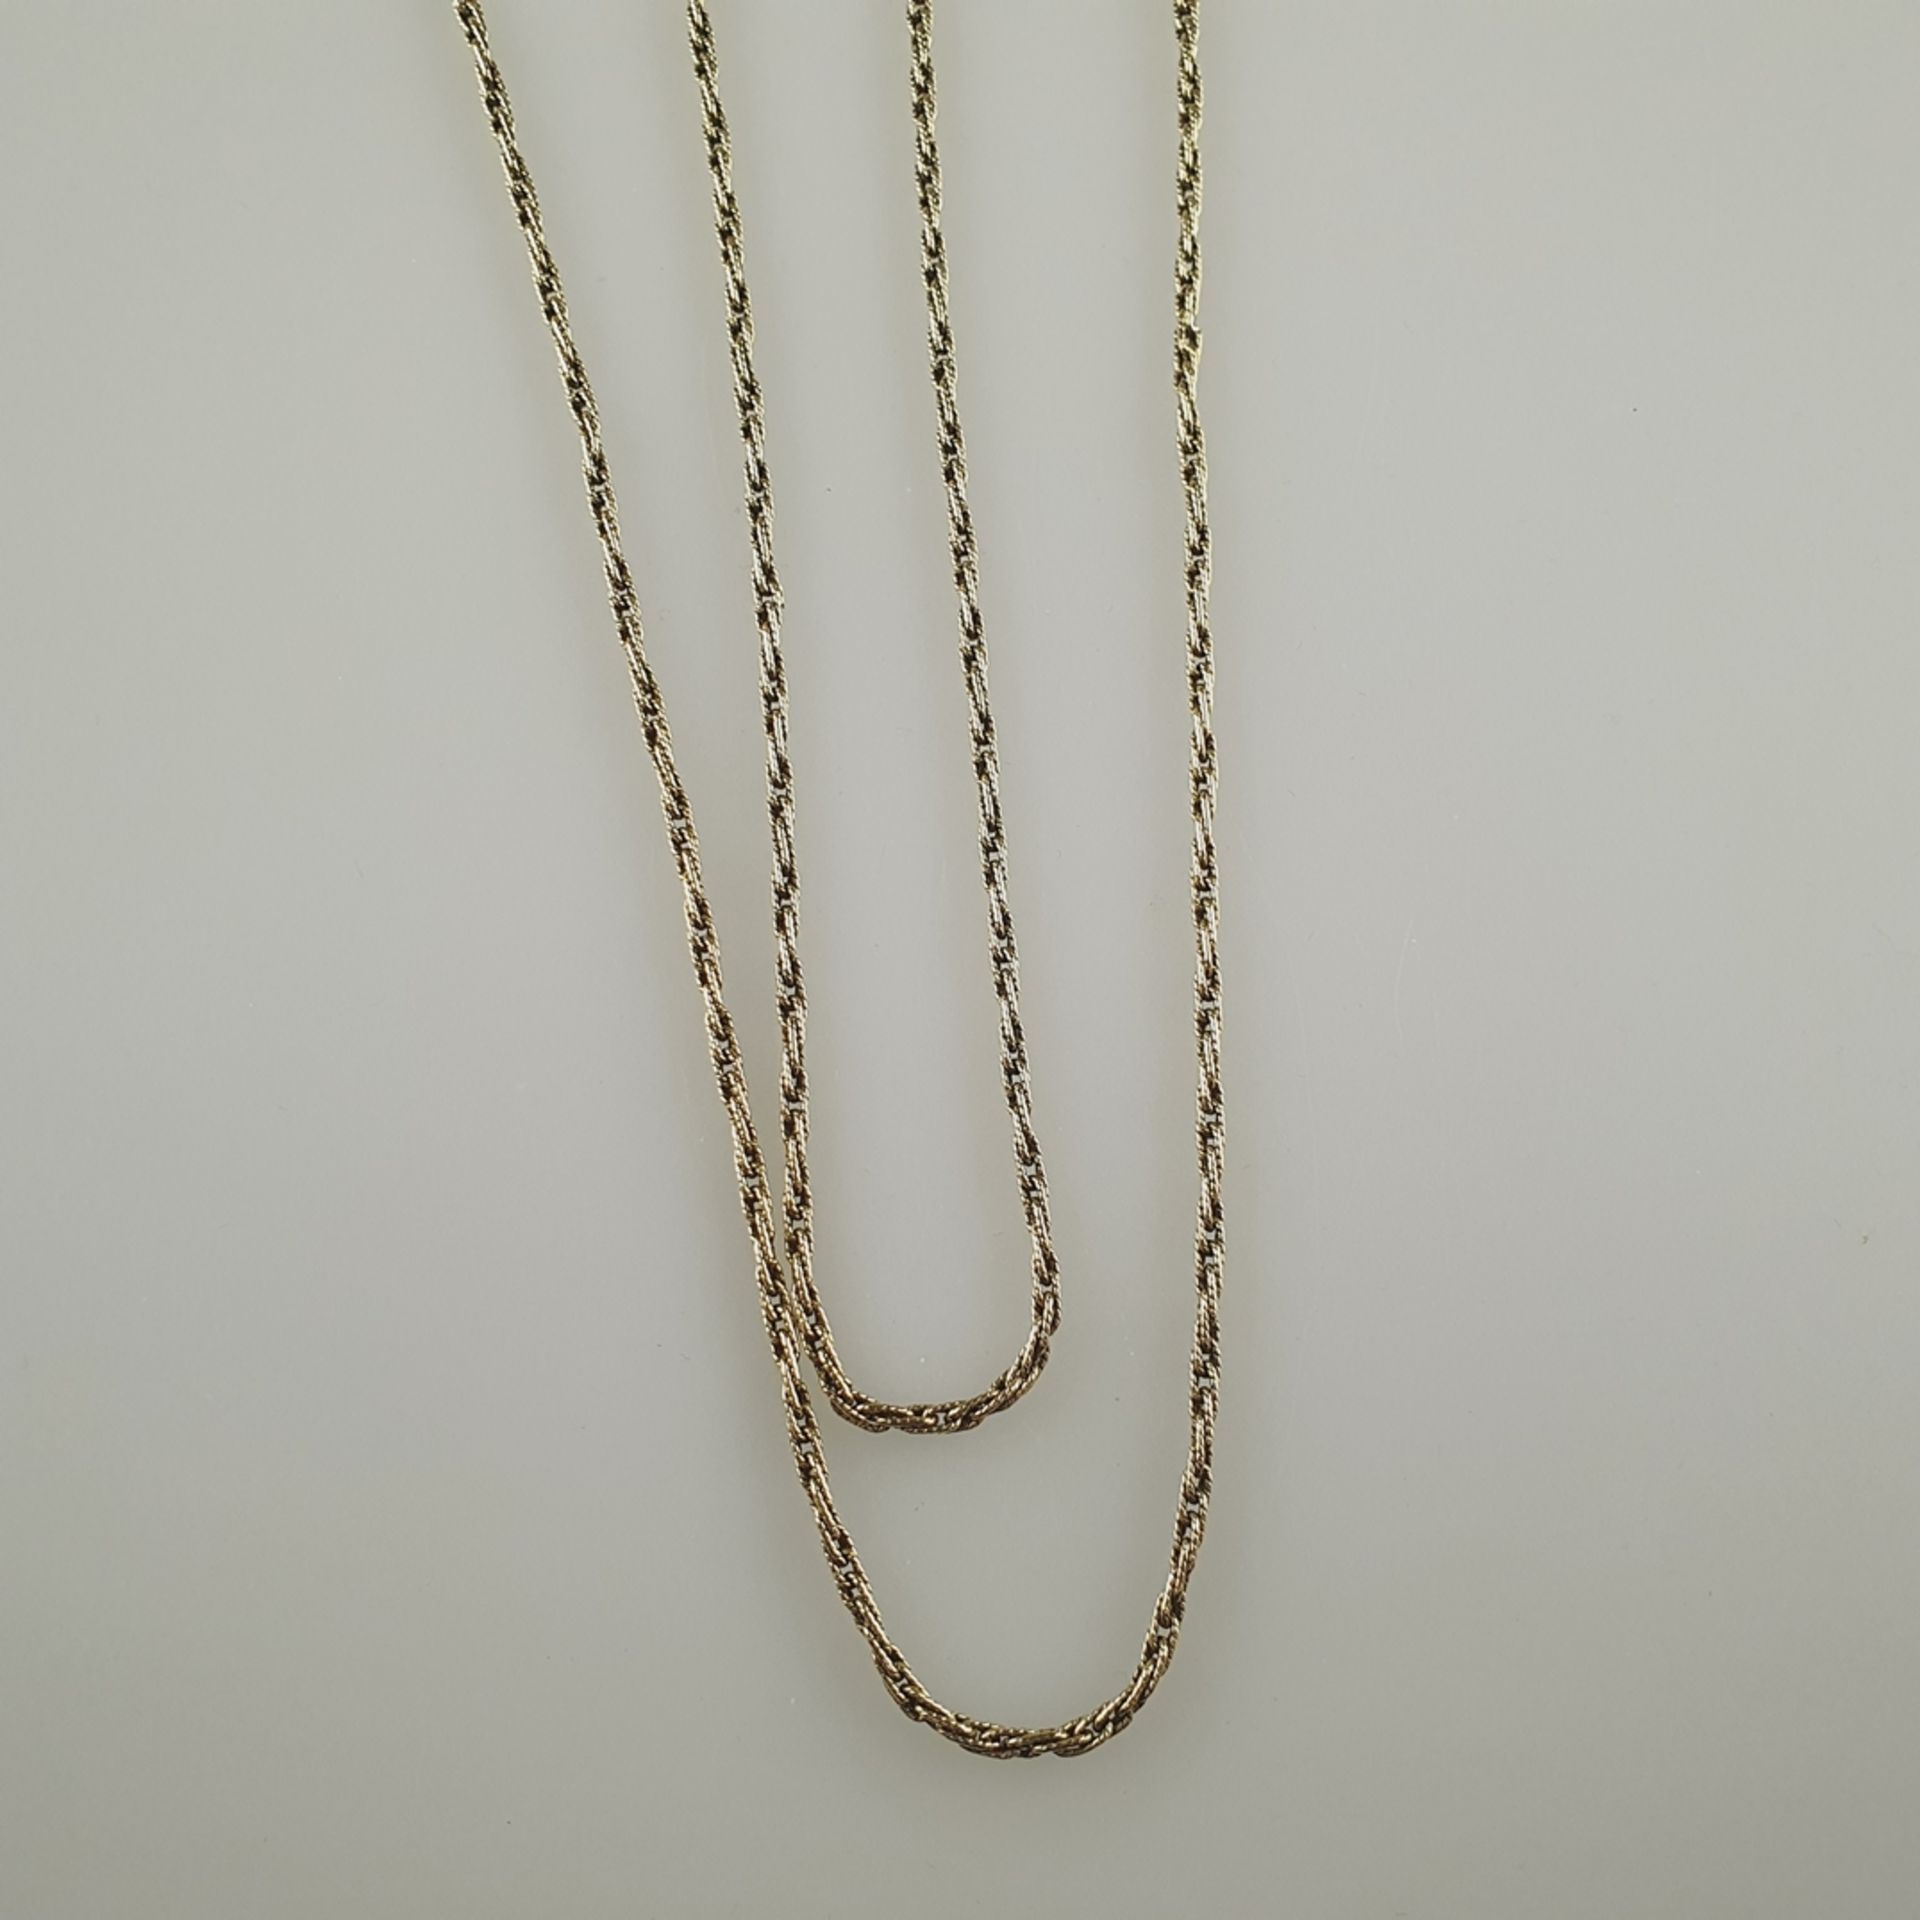 Endlos-Goldkette - Gelbgold 585/000, mit Punze, Kordelkette, L. ca. 89 cm, ca. 26,5 g - Image 4 of 4